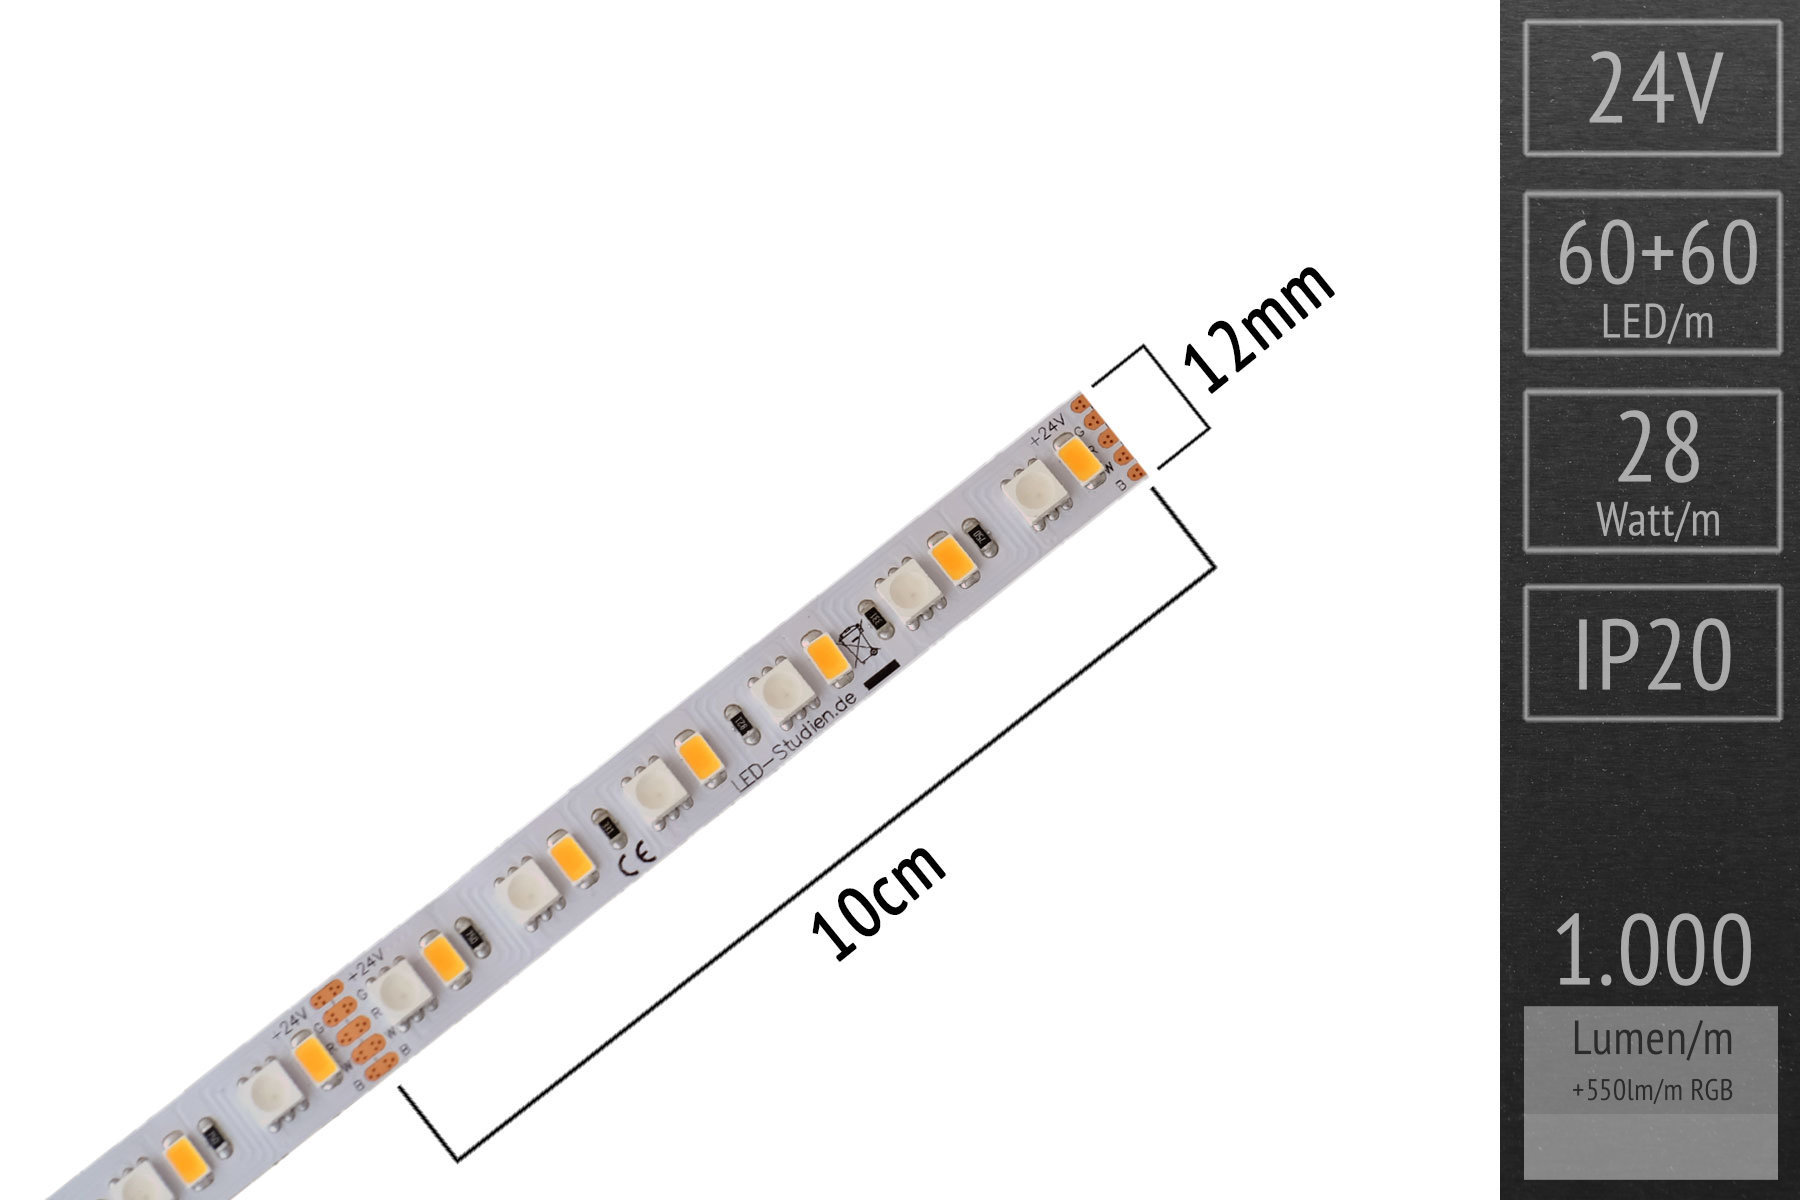 LED-Streifen lk04-6o-_detail